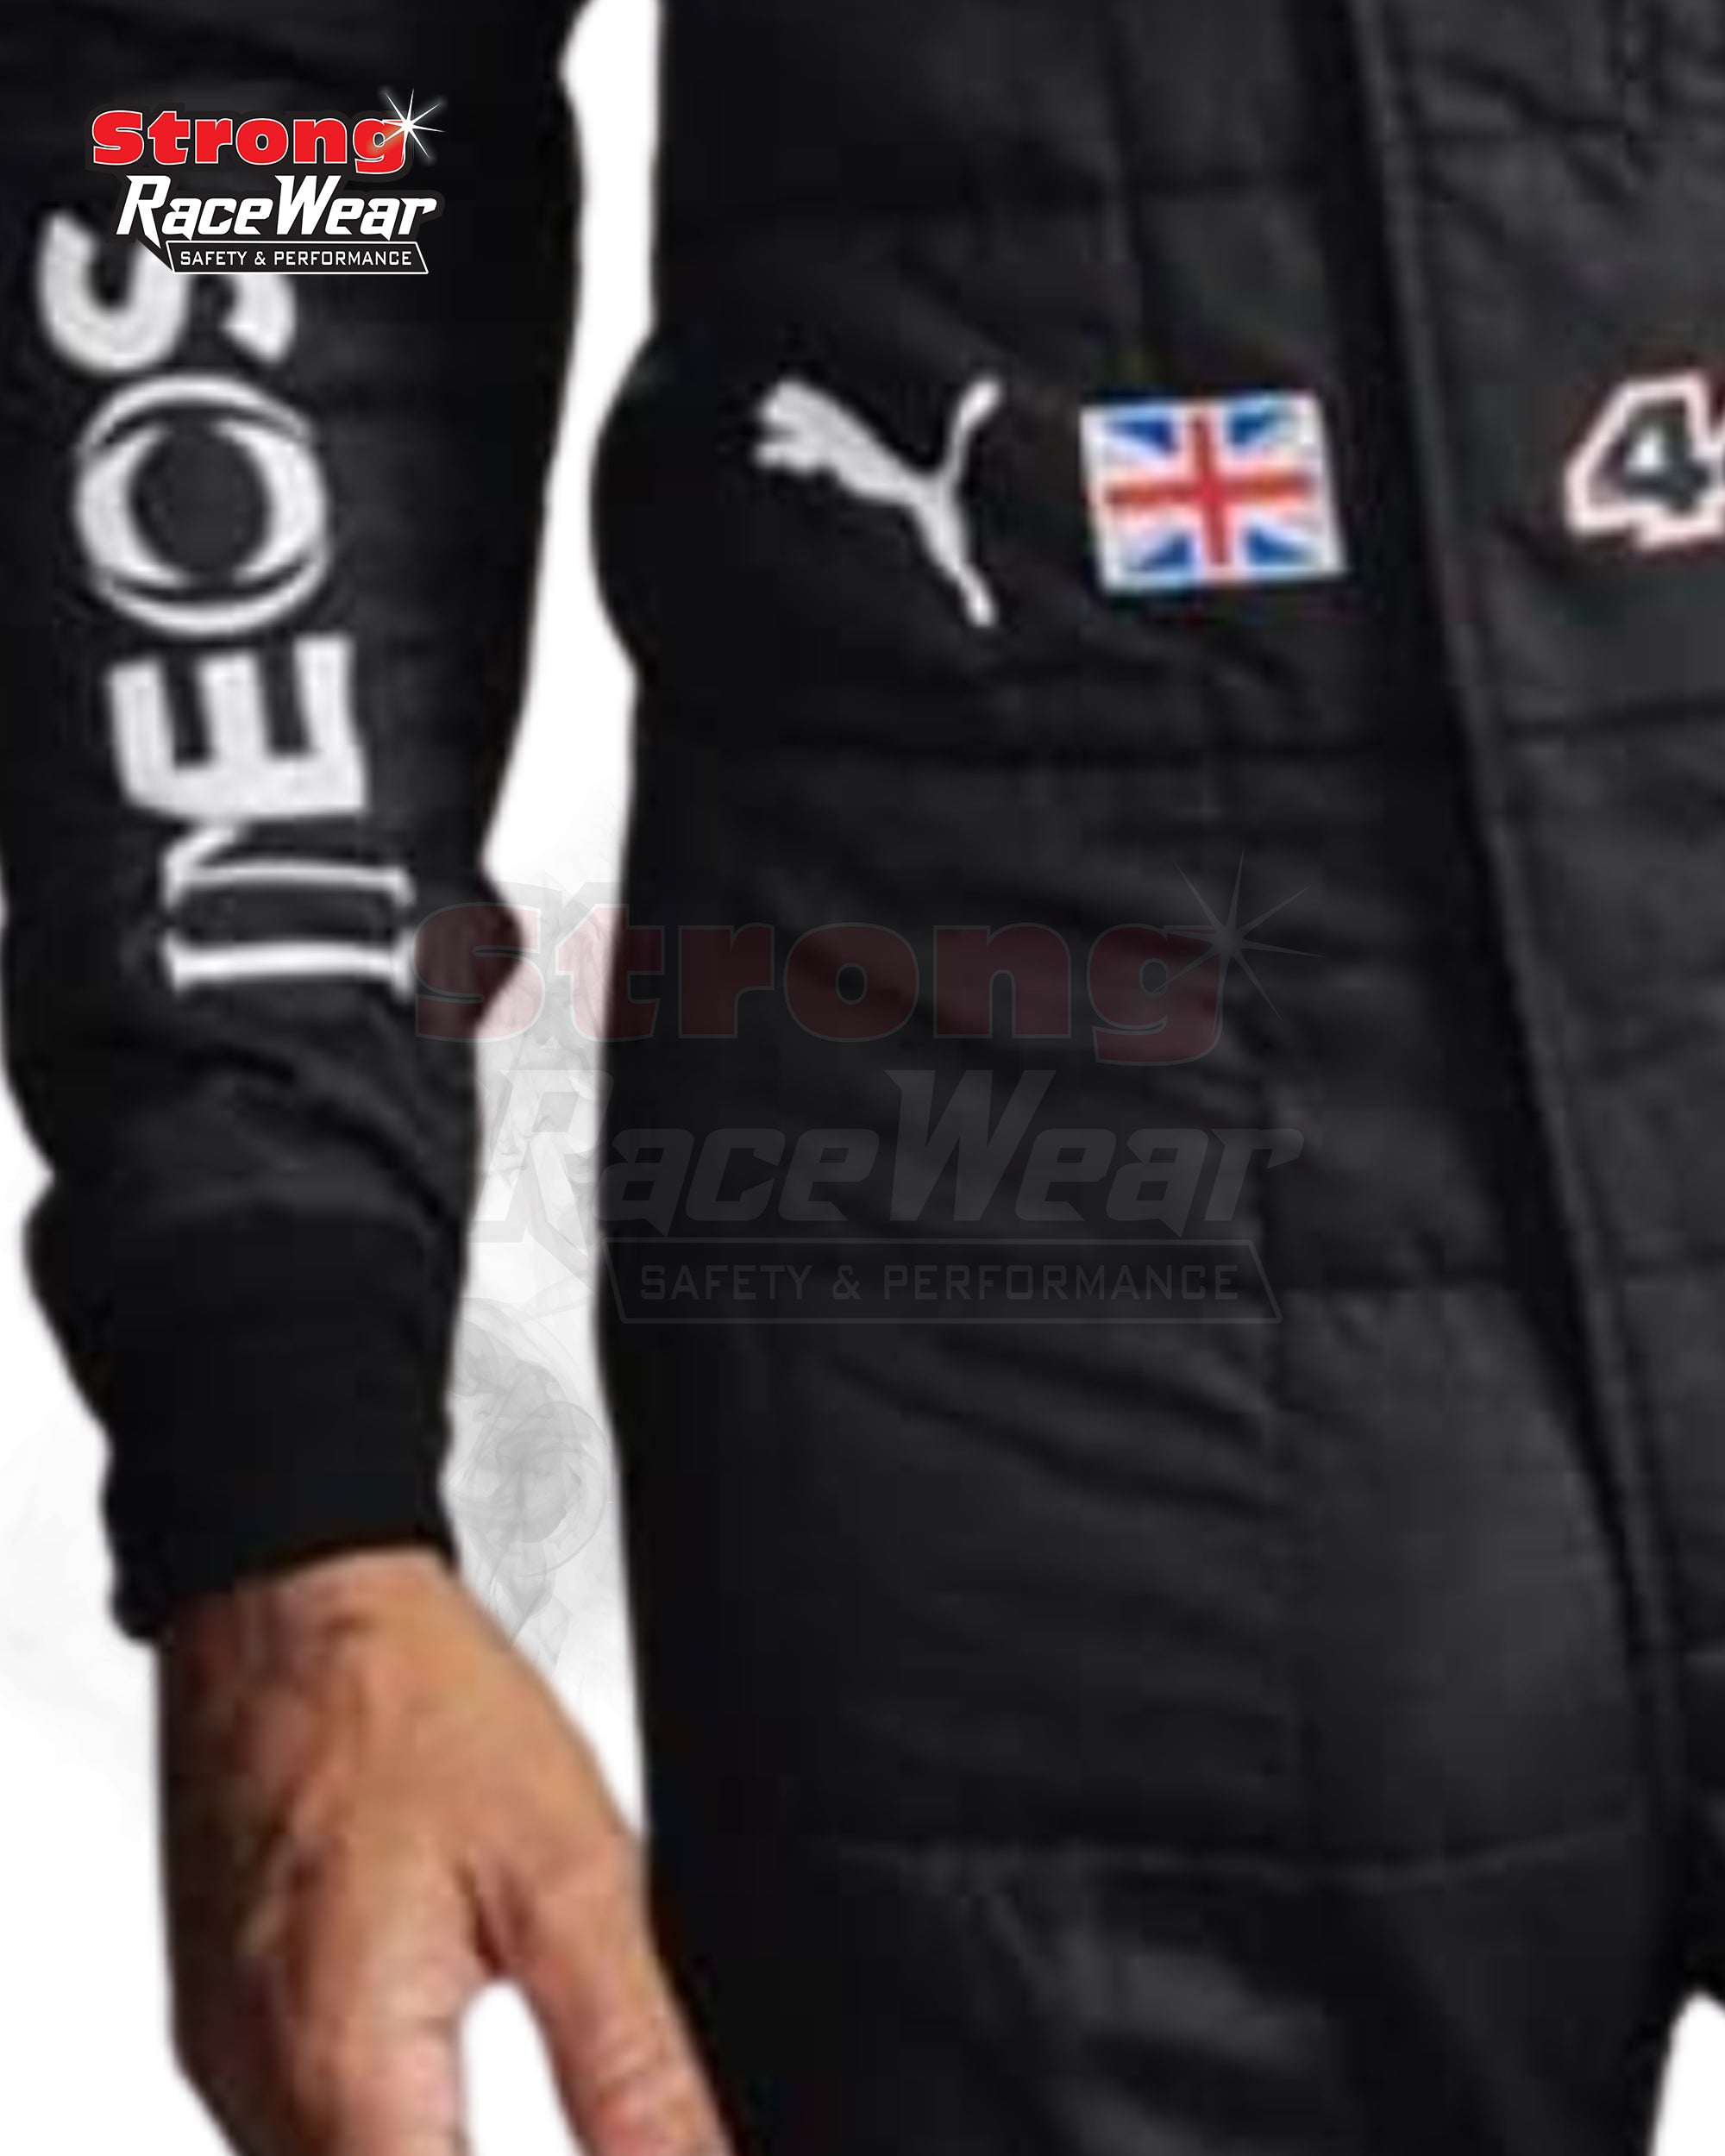 2020 Lewis Hamilton Mercedes F1 Race Suit